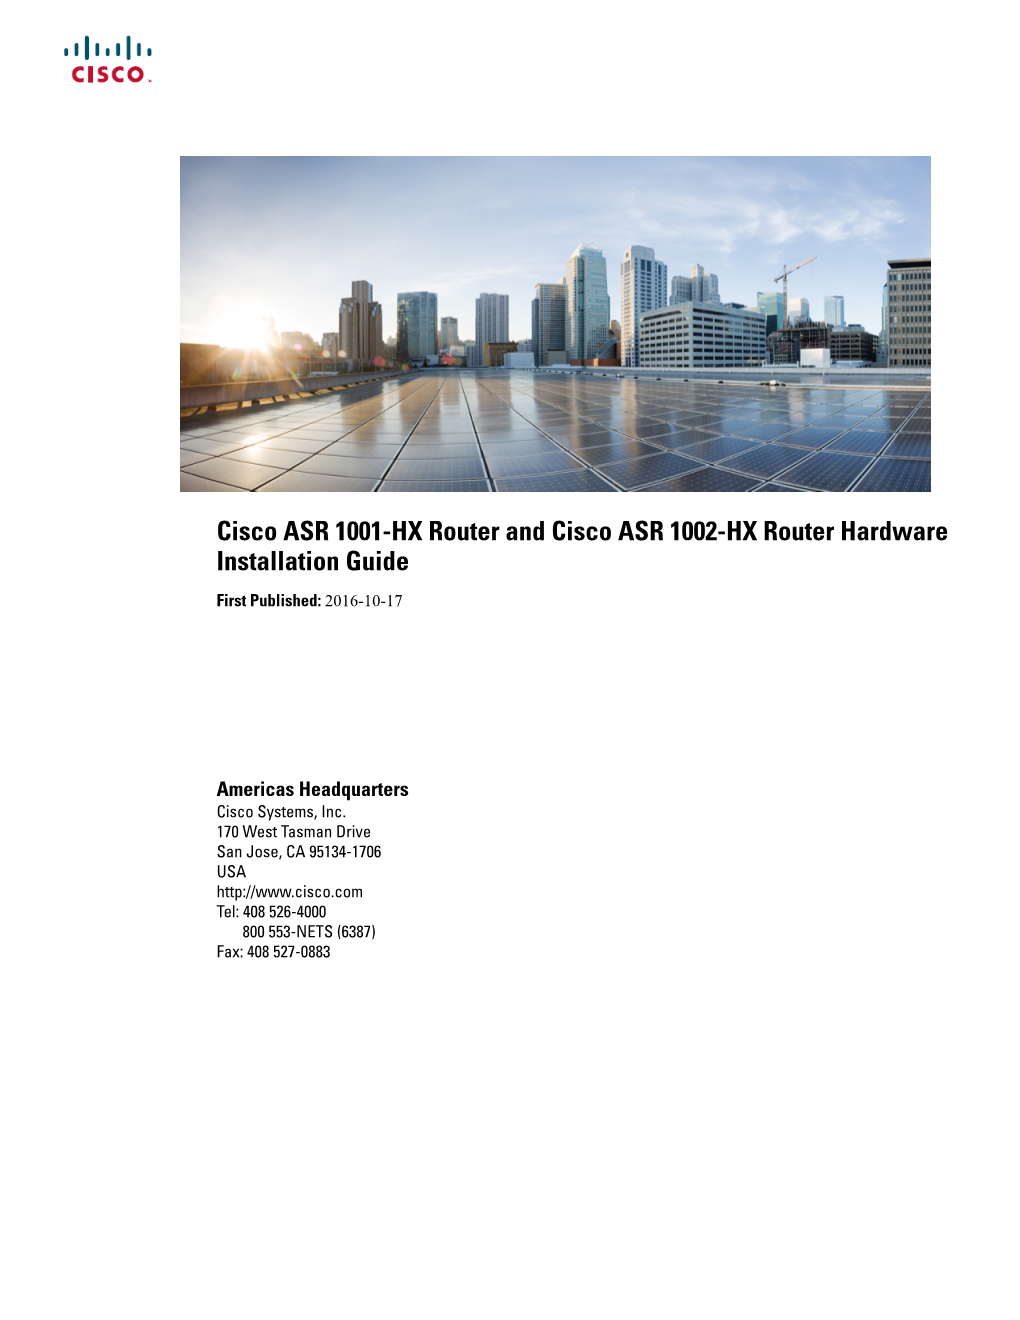 Cisco ASR 1001-HX Router and Cisco ASR 1002-HX Router Hardware Installation Guide